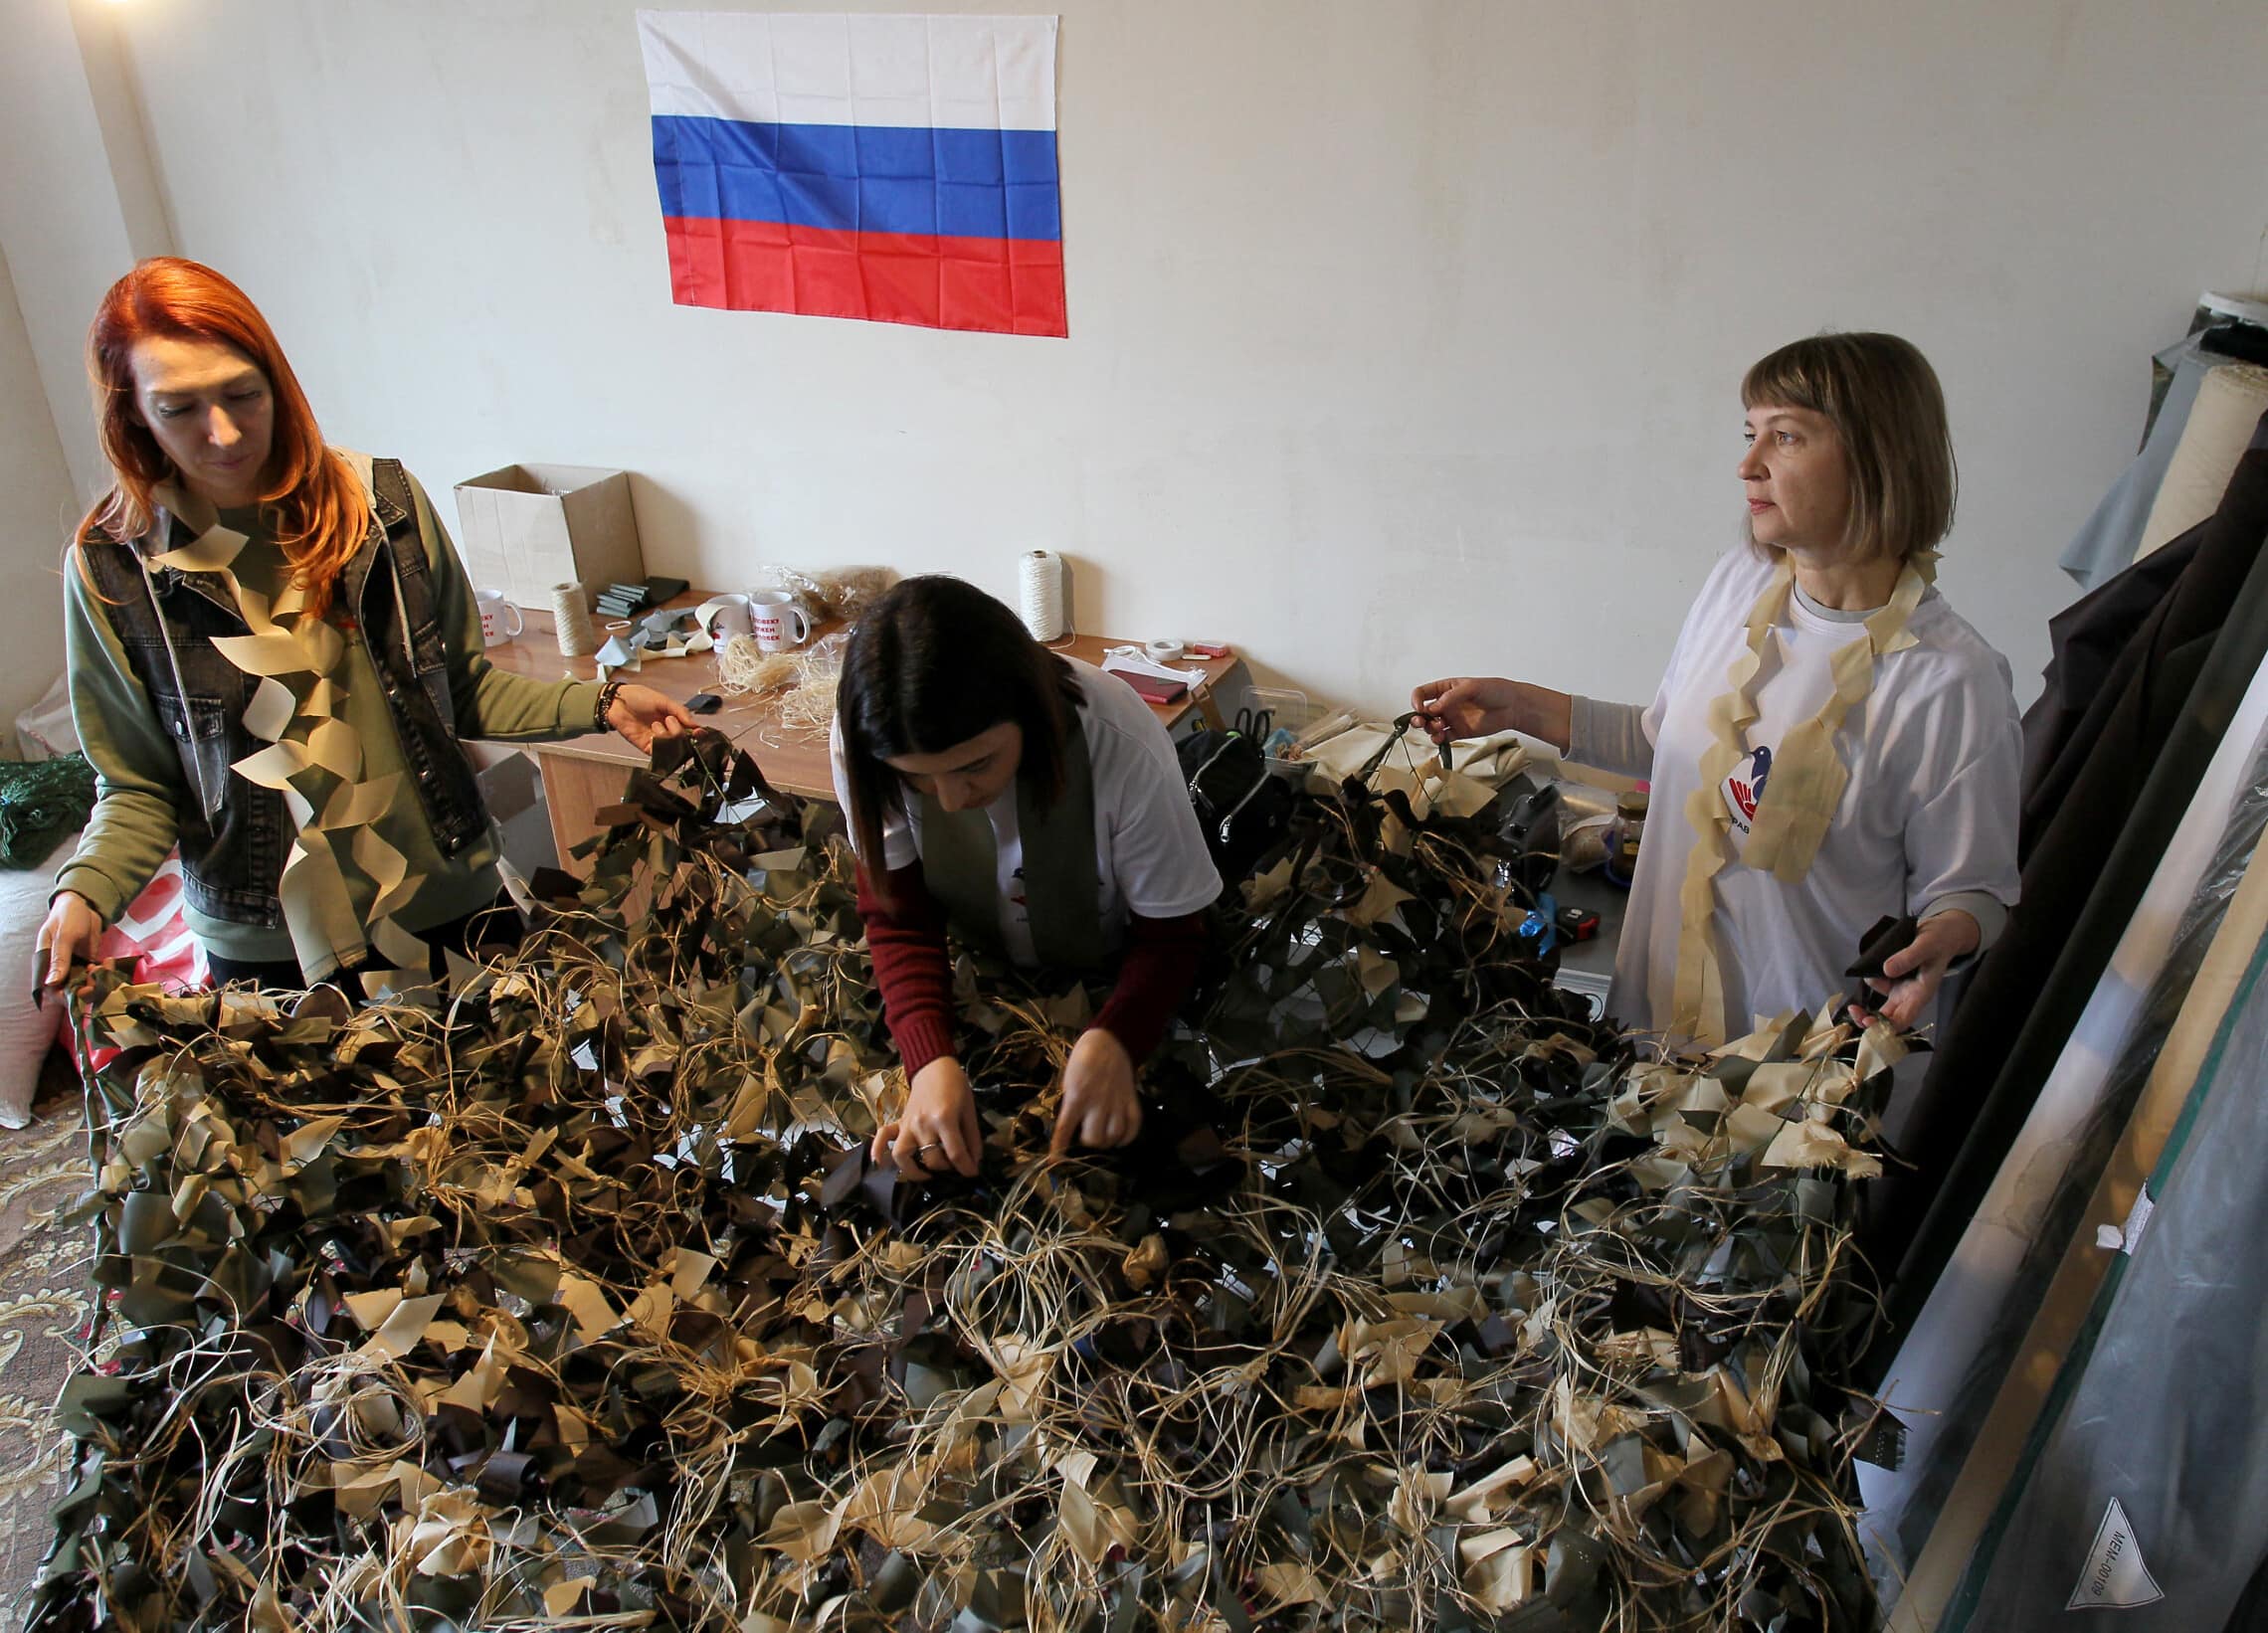 נשים רוסיות מתנדבות לייצר רשתות הסוואה לצבא הרוסי לצורך מלחמתו באוקראינה (צילום: STRINGER / AFP)